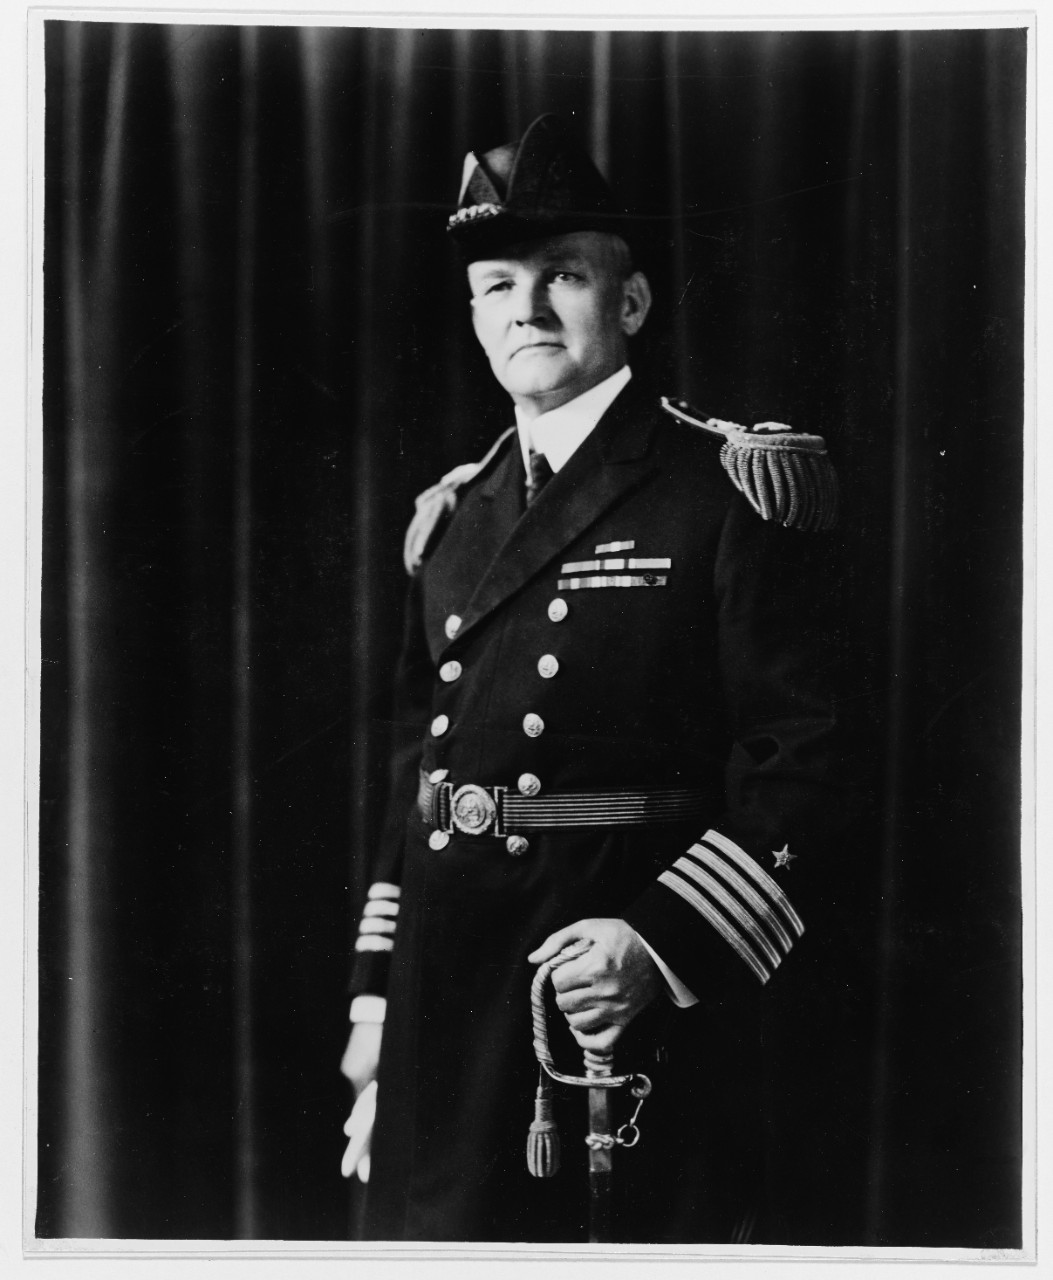 Captain David W. Todd, USN